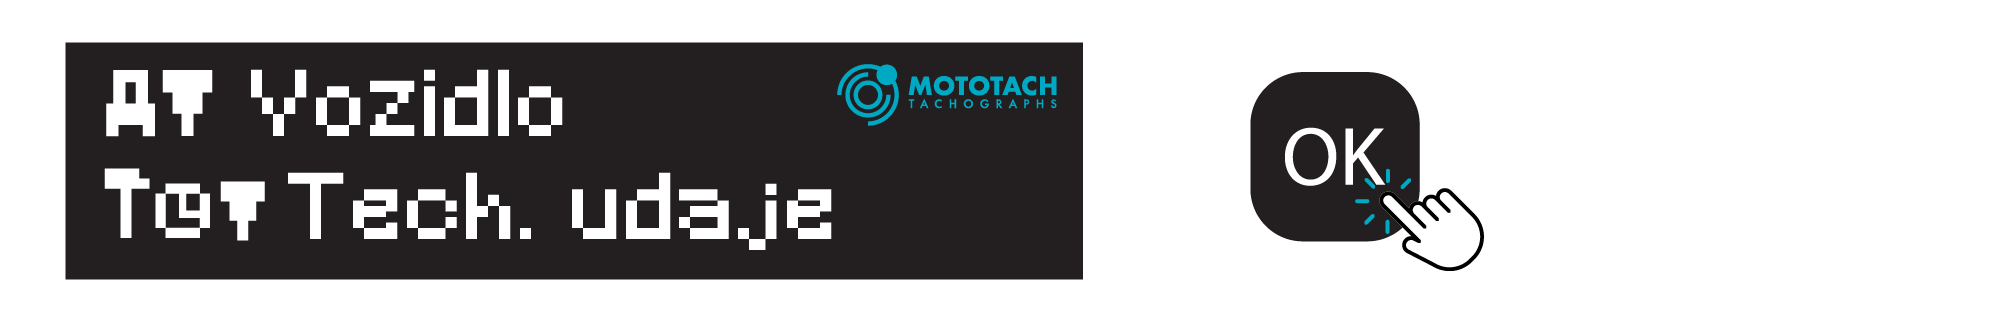 Tachograf vytlačok technickych údajovArtboard 4-min